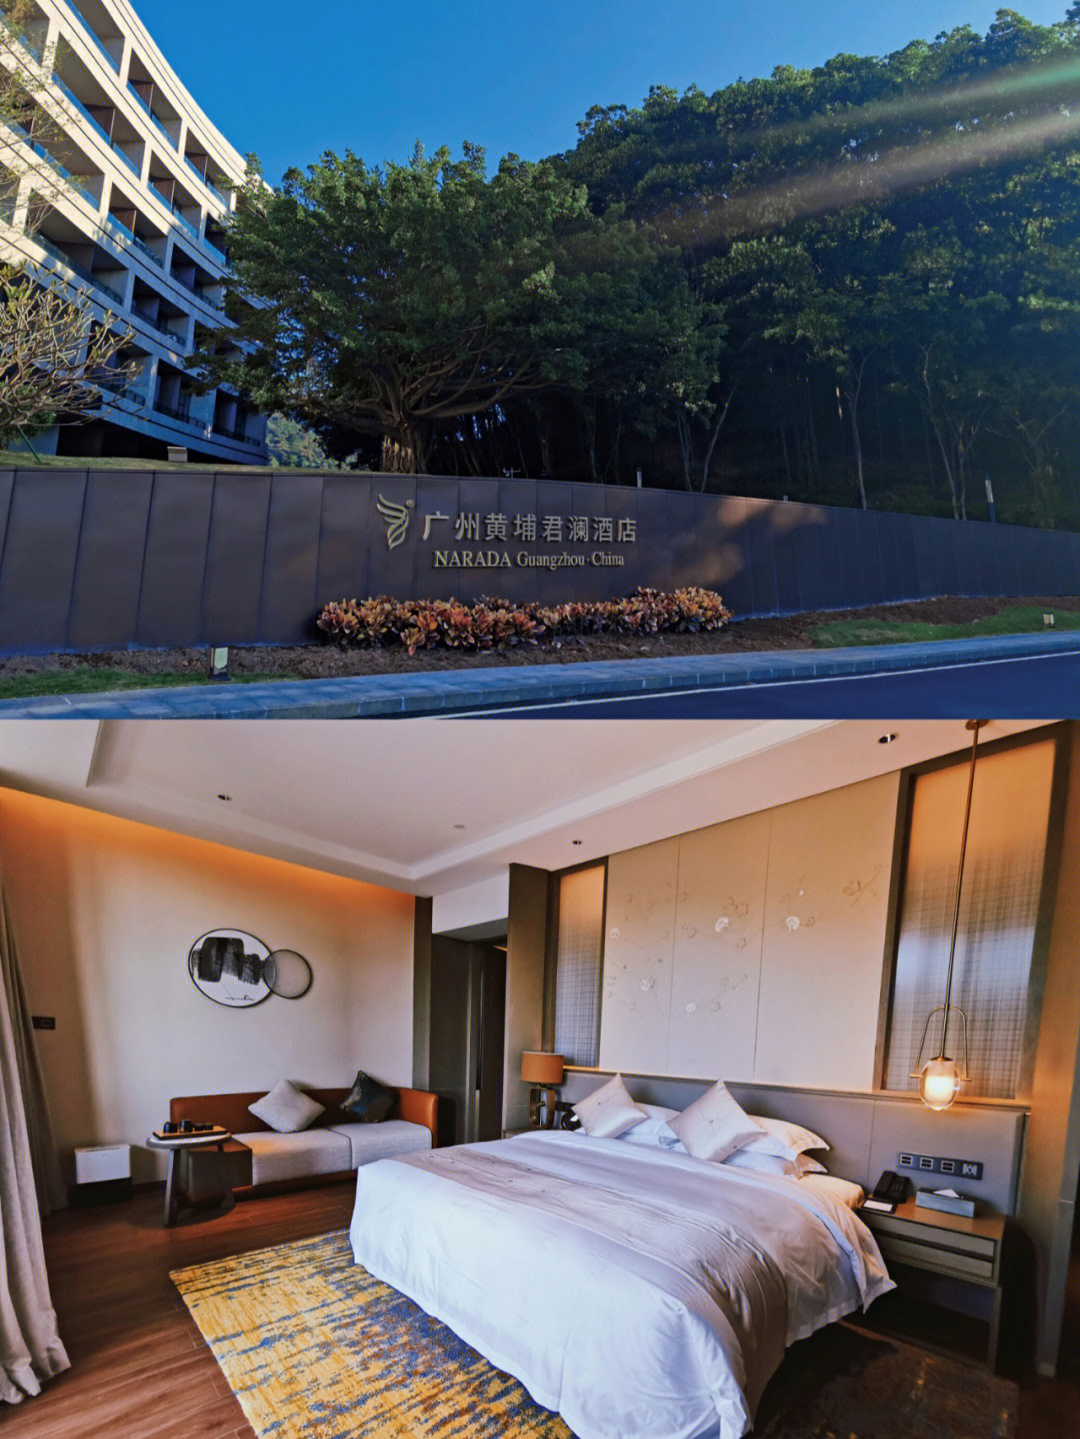 99君澜酒店位于广州市黄埔区温涧路水声水库旁,依山傍水,周围森林密